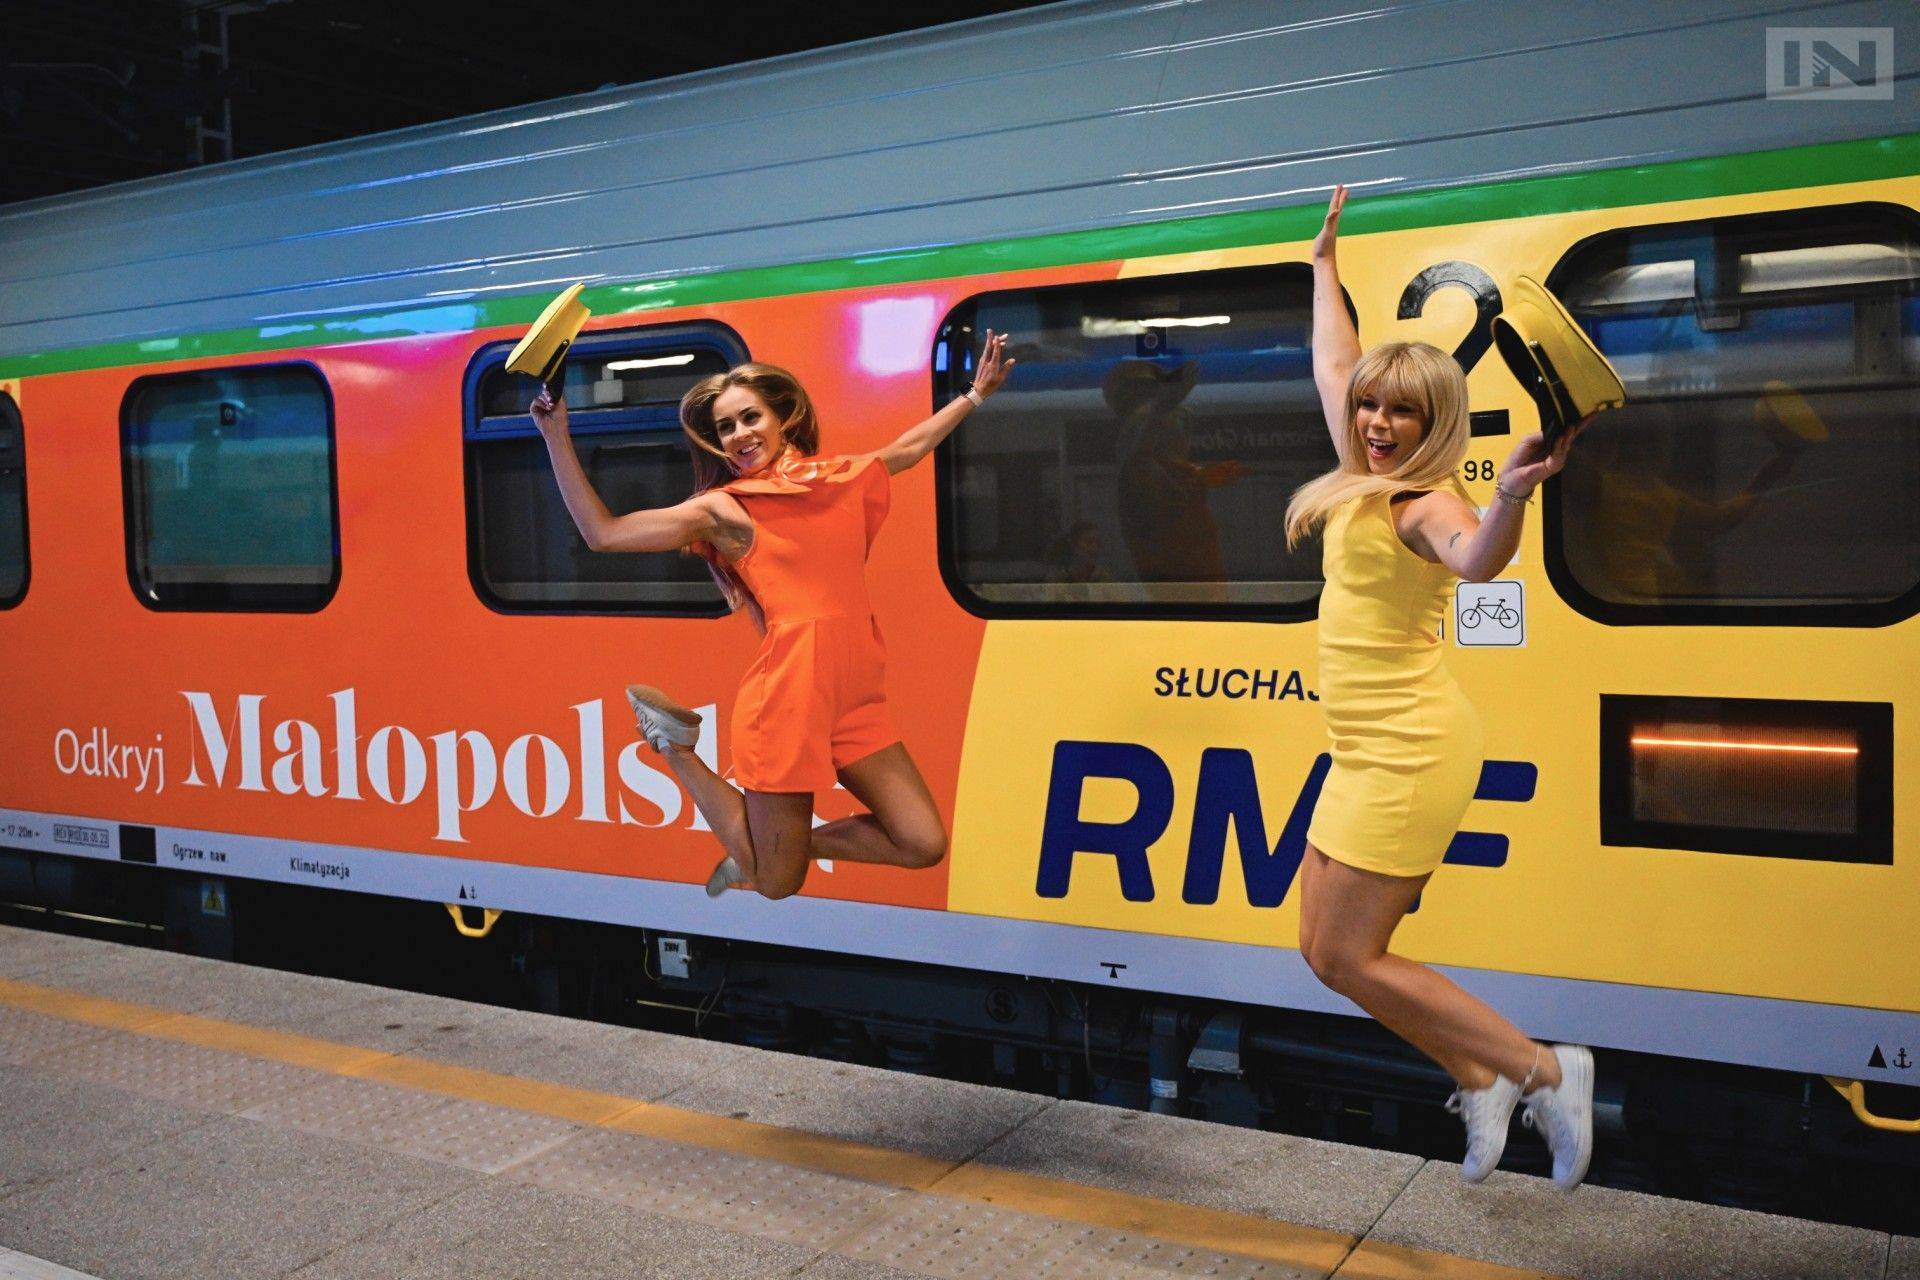 To była szalona podróż do Małopolski pociągami "Daj się ugościć", bawiły się tysiące osób